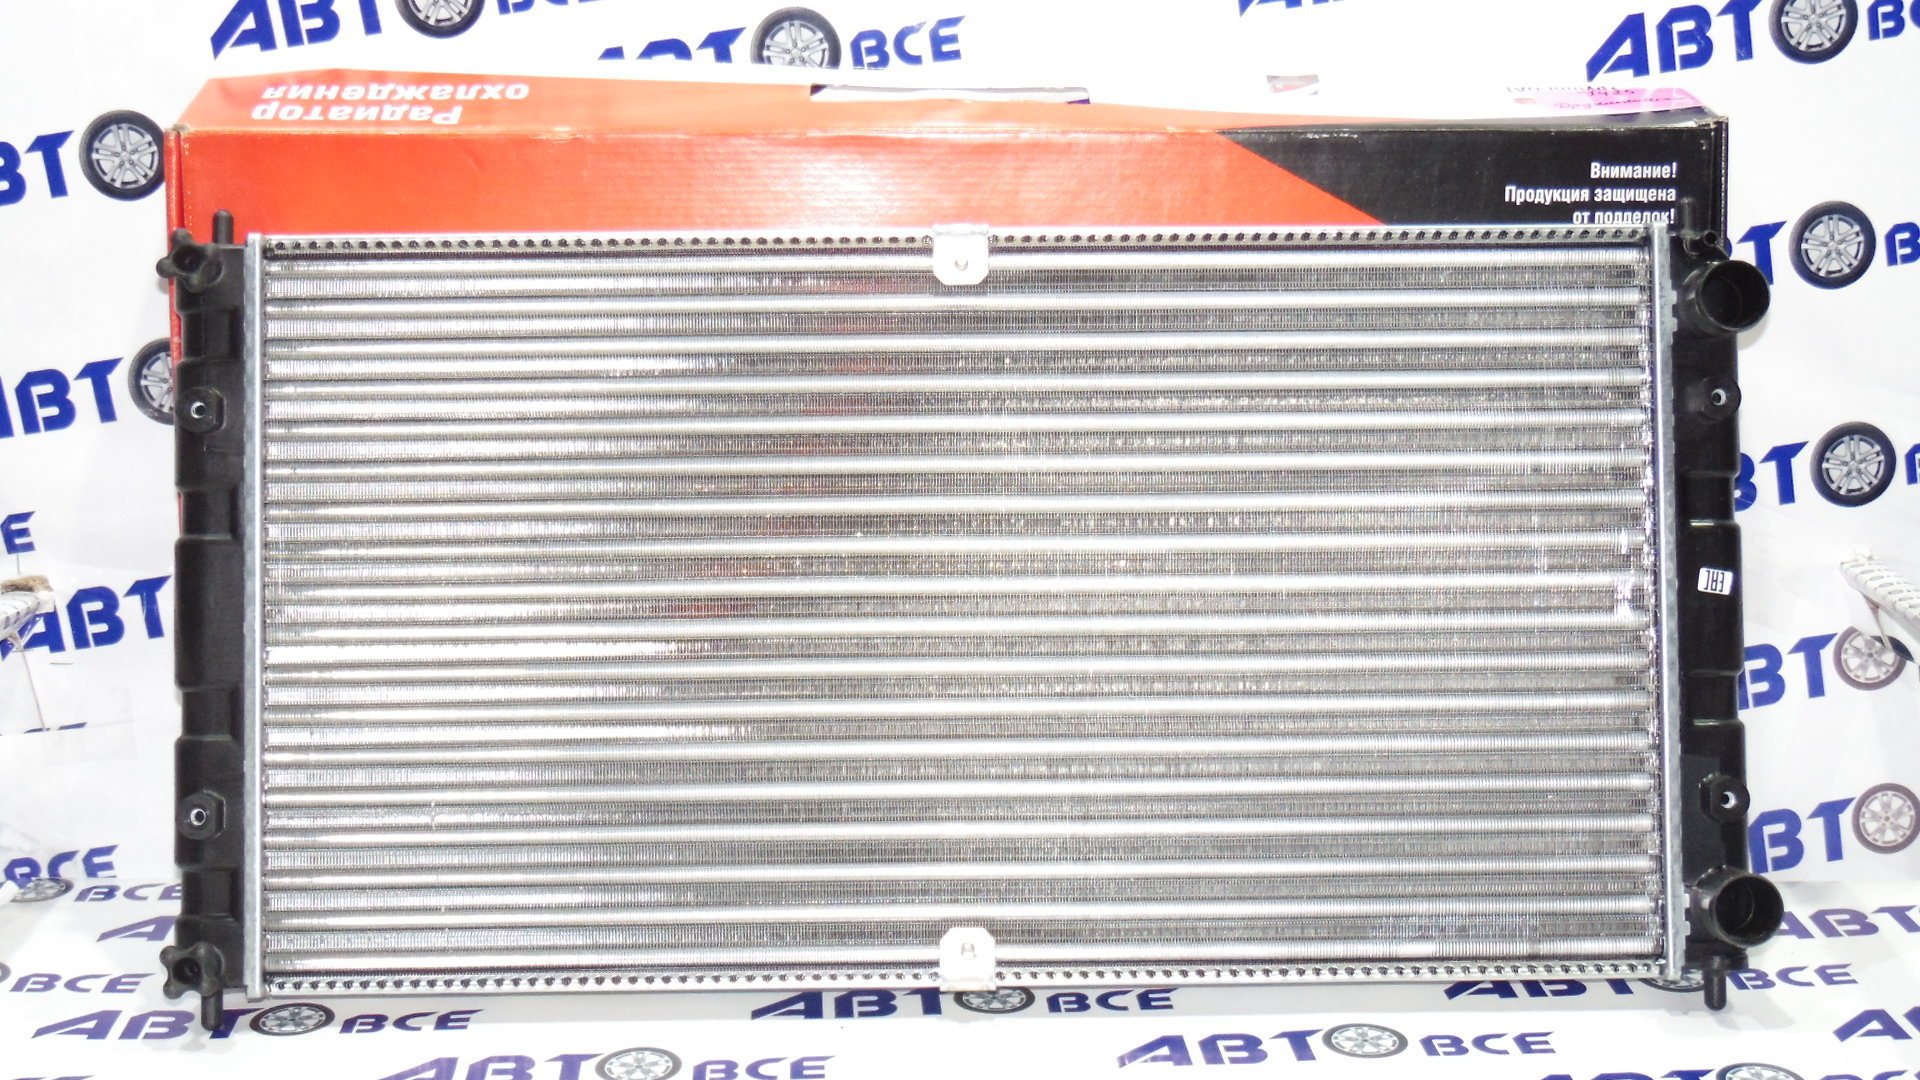 Радиатор основной (охлаждение) ВАЗ-2123 Дааз